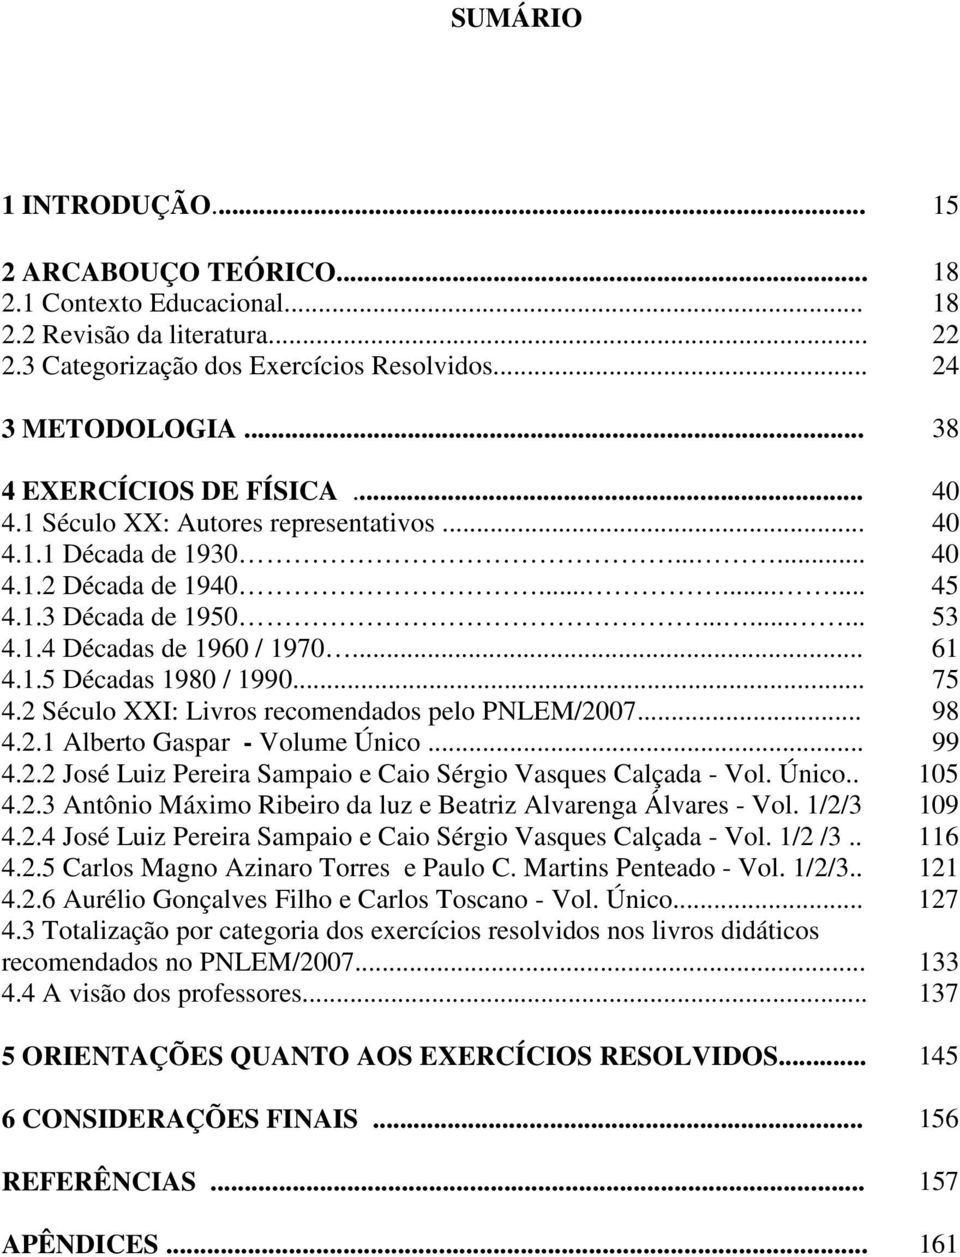 .. 61 4.1.5 Décadas 1980 / 1990... 75 4.2 Século XXI: Livros recomendados pelo PNLEM/2007... 98 4.2.1 Alberto Gaspar - Volume Único... 99 4.2.2 José Luiz Pereira Sampaio e Caio Sérgio Vasques Calçada - Vol.